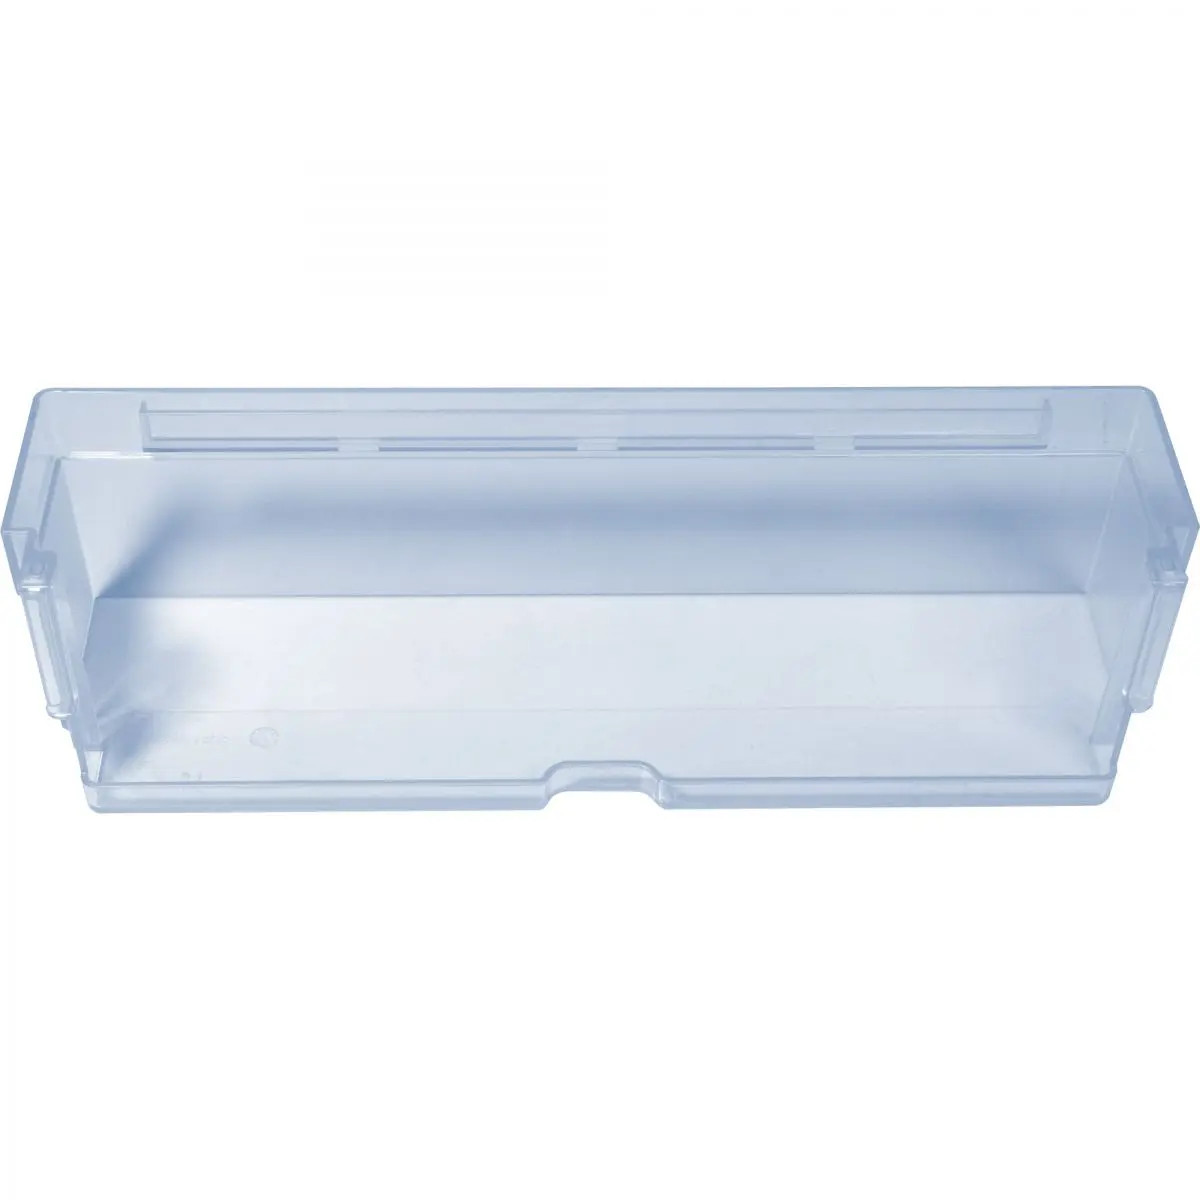 Tortatartó, átlátszó kék, Szé 30,5 x Mé 8,8 x Ma 7,5 cm Dometic RML 933X hűtőszekrényekhez